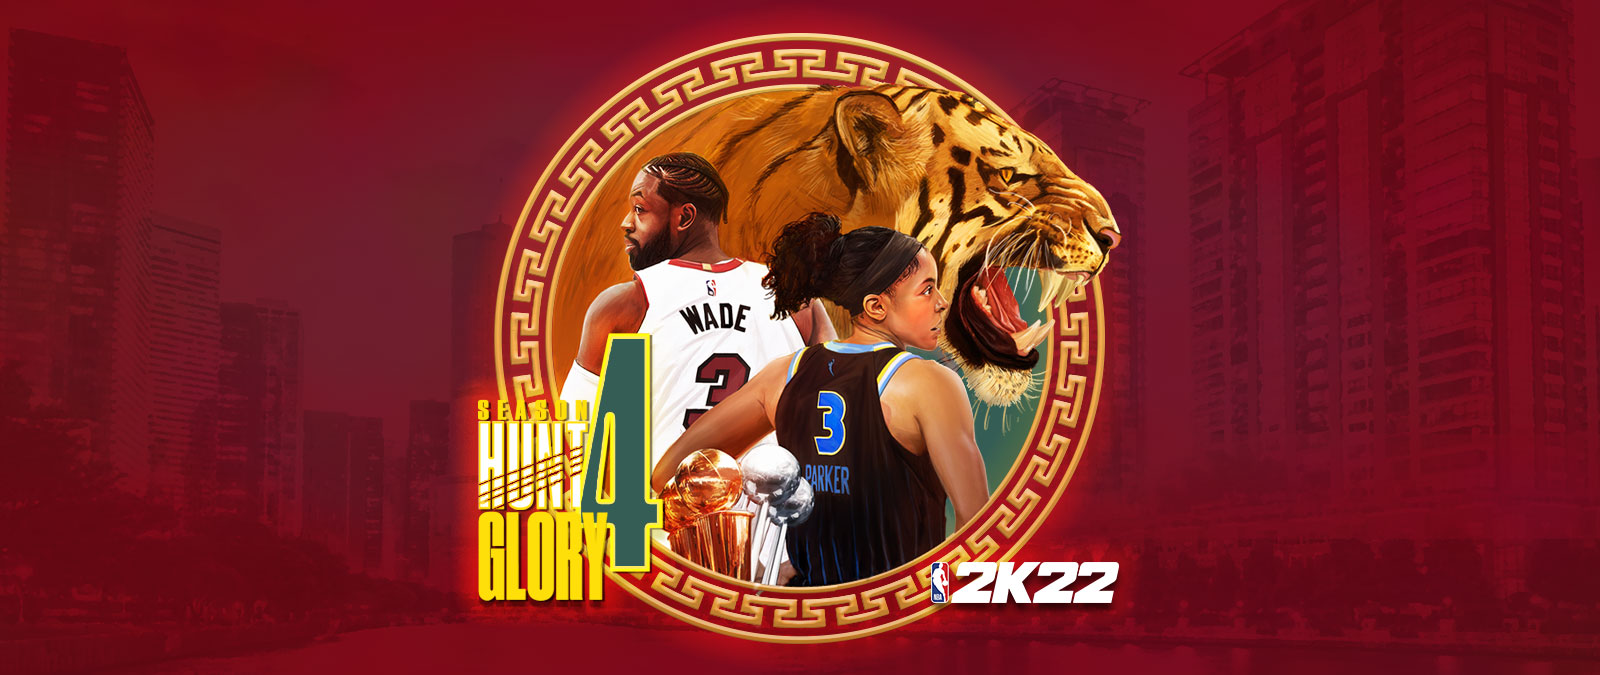 NBA 2K22, Season 4: Hunt 4 Glory, kruhový grafický prvek na červeném pozadí s panoramatem města zobrazuje vrčícího tygra a Dwayna Wadea s Candace Parkerovou. 